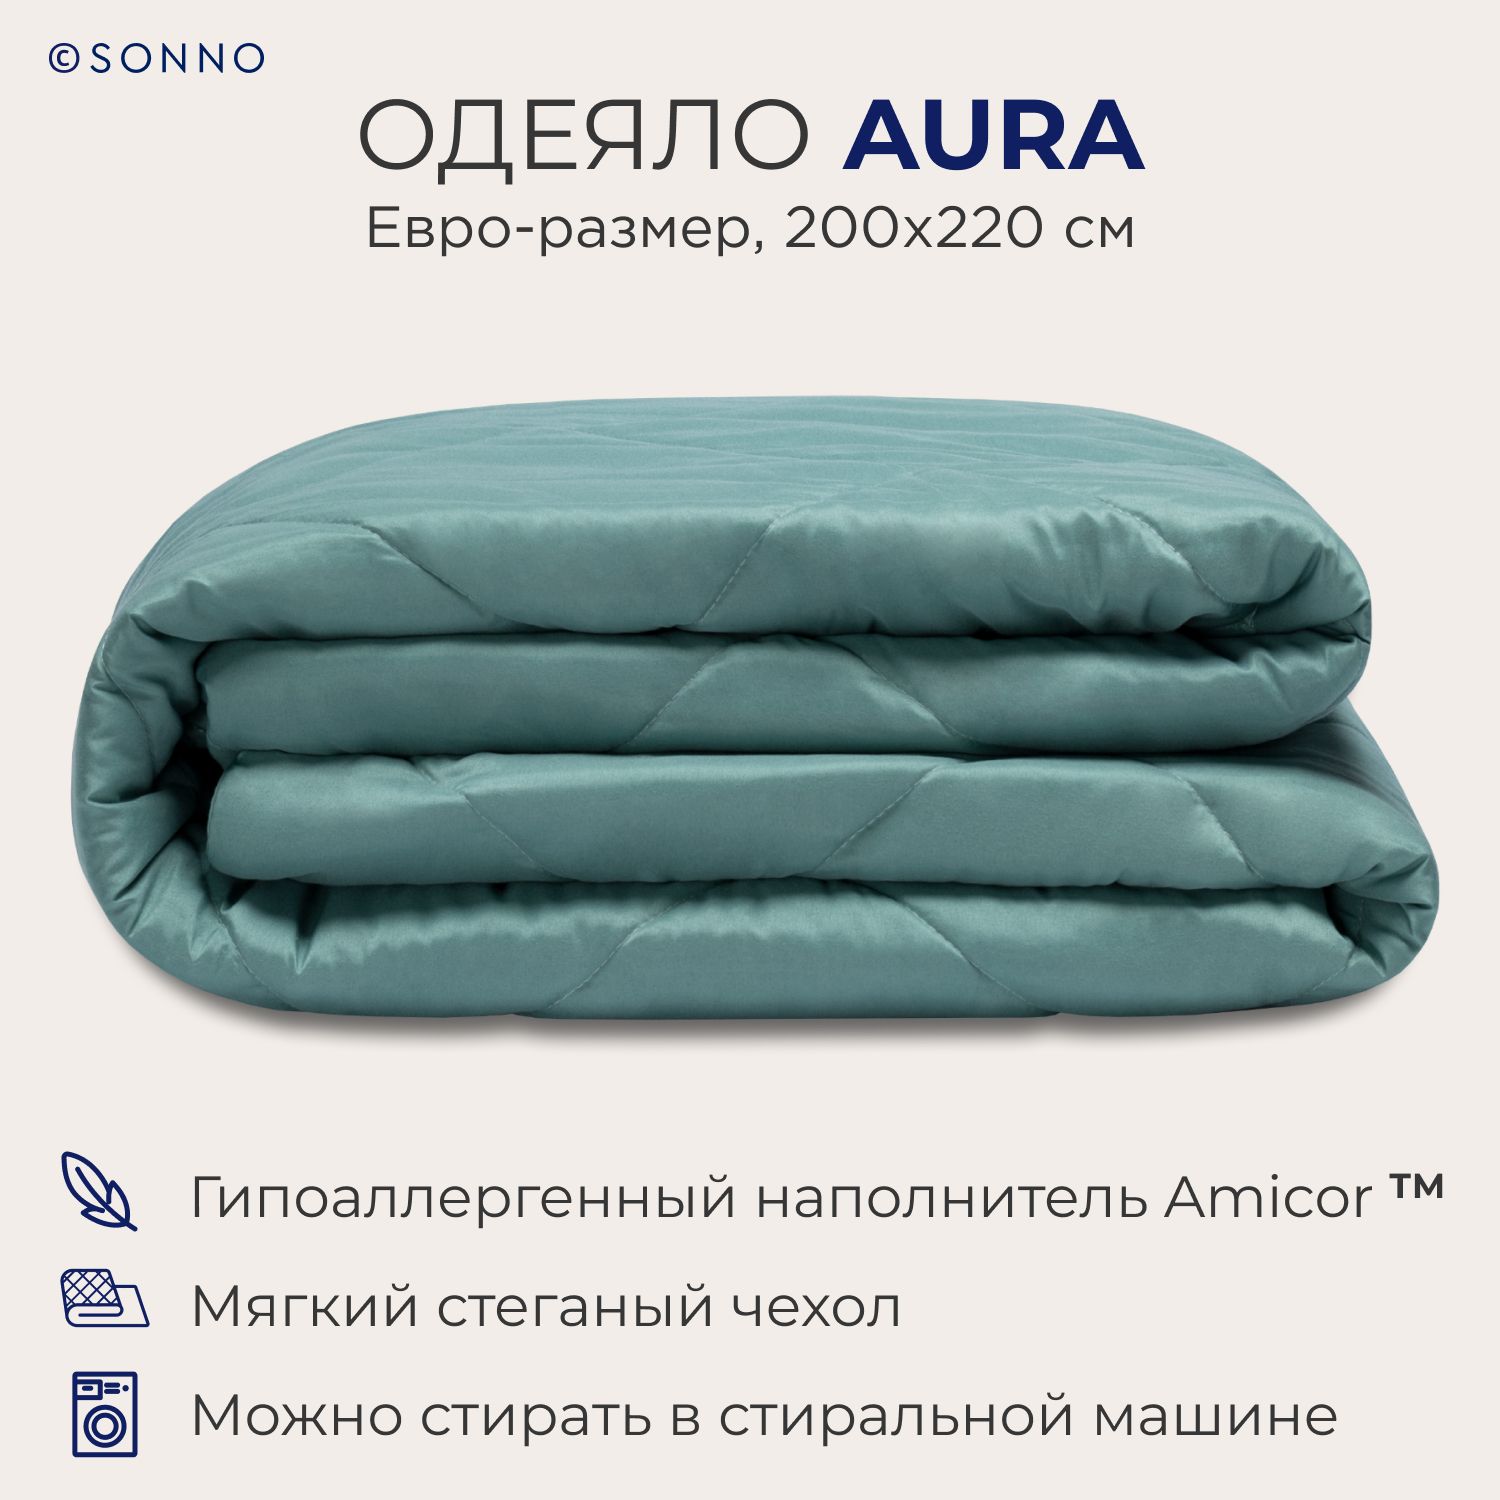 Одеяло SONNO AURA евро-размер,200х220 см, всесезонное, стеганое, цвет Бельгийский зеленый